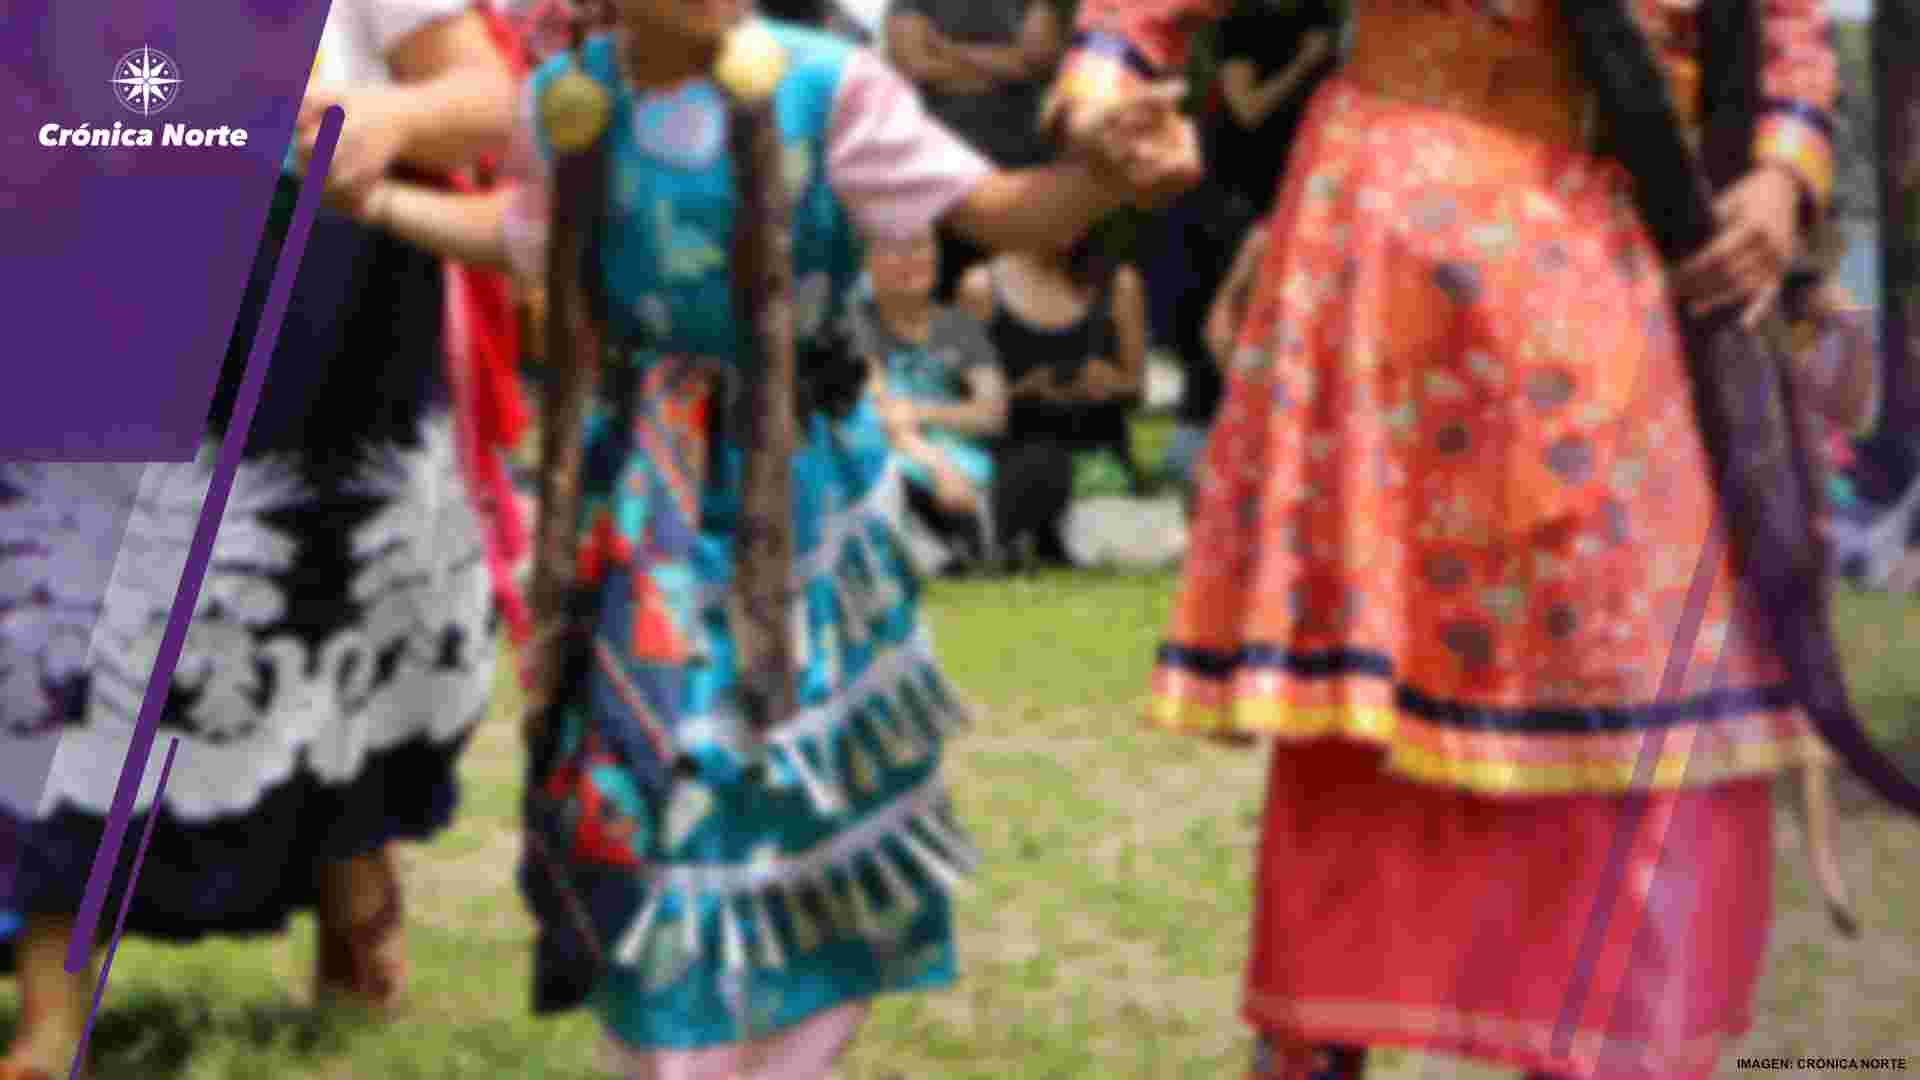 Muerte de mujeres indígenas se castiga menos, revelan